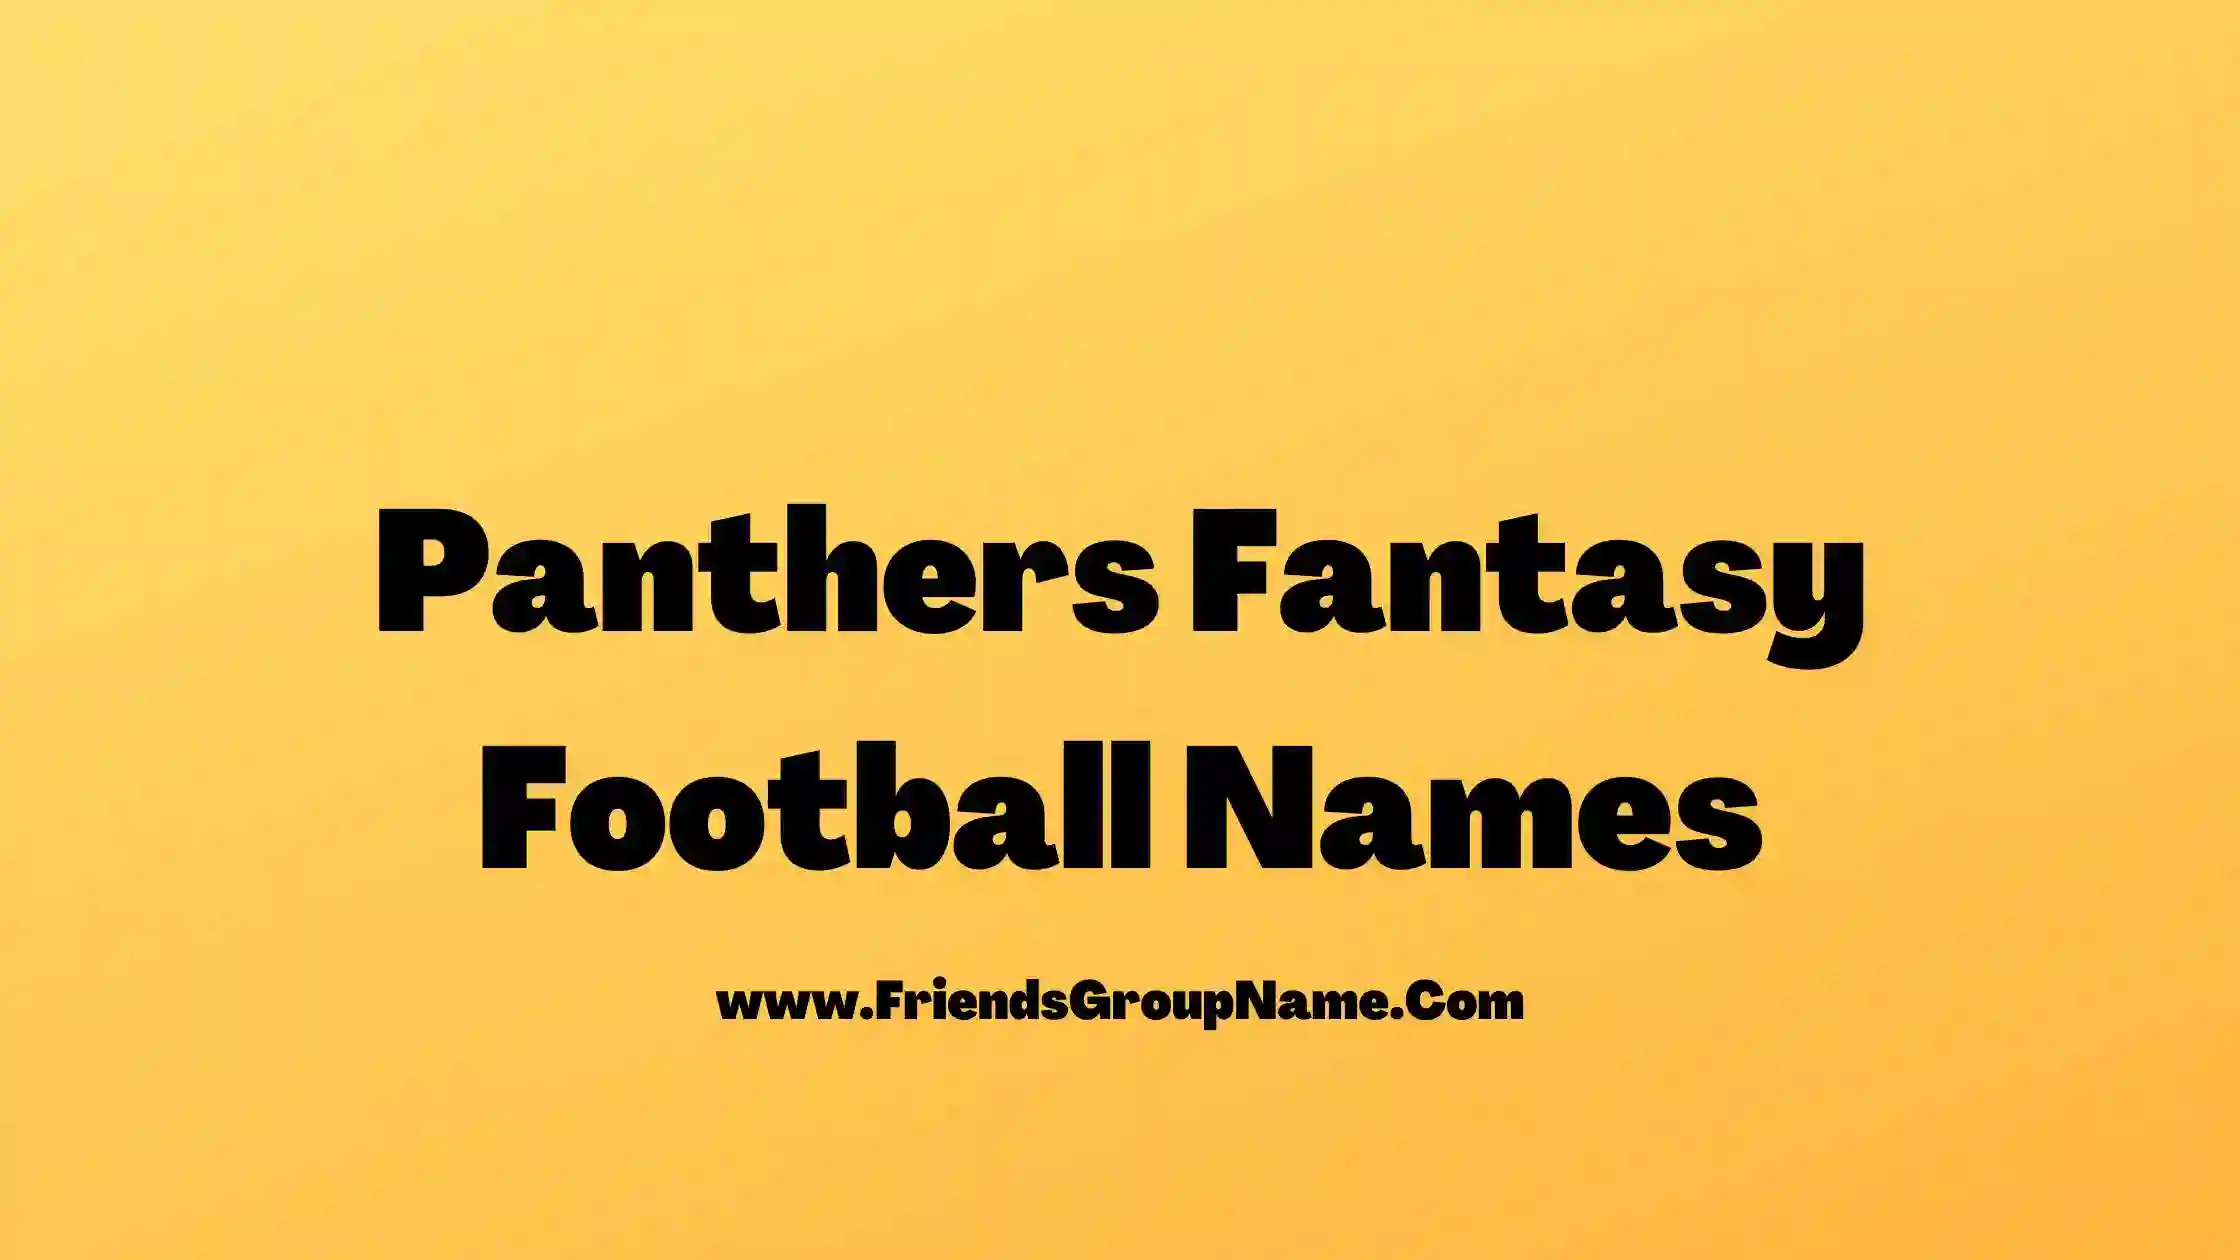 Panthers Fantasy Football Names